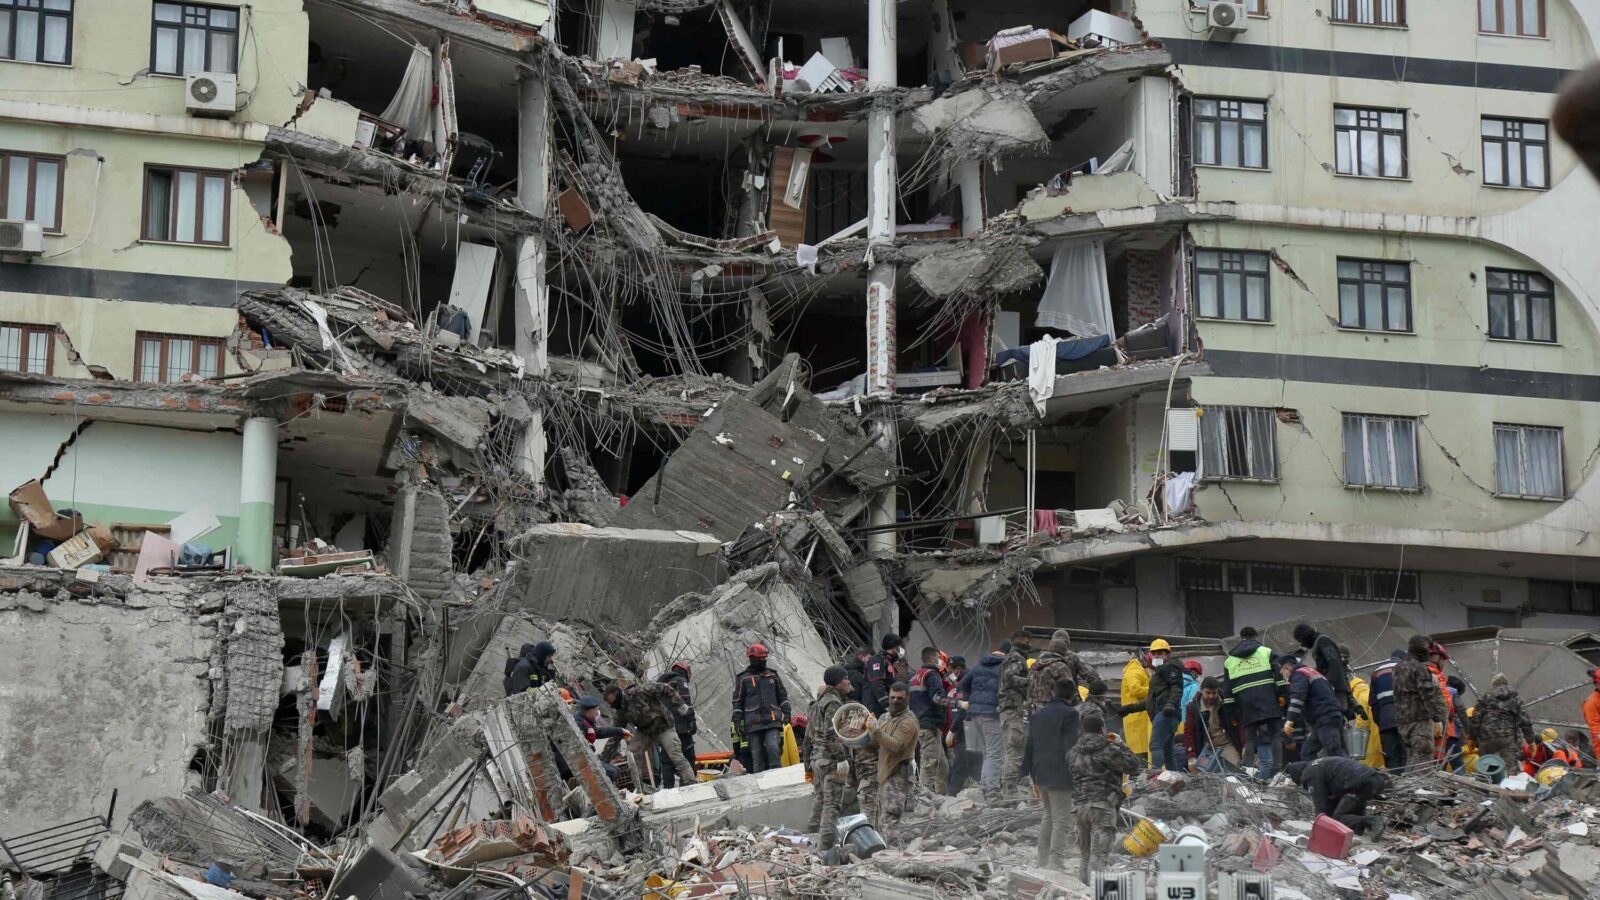 Terremoto, i morti potrebbero essere diecimila